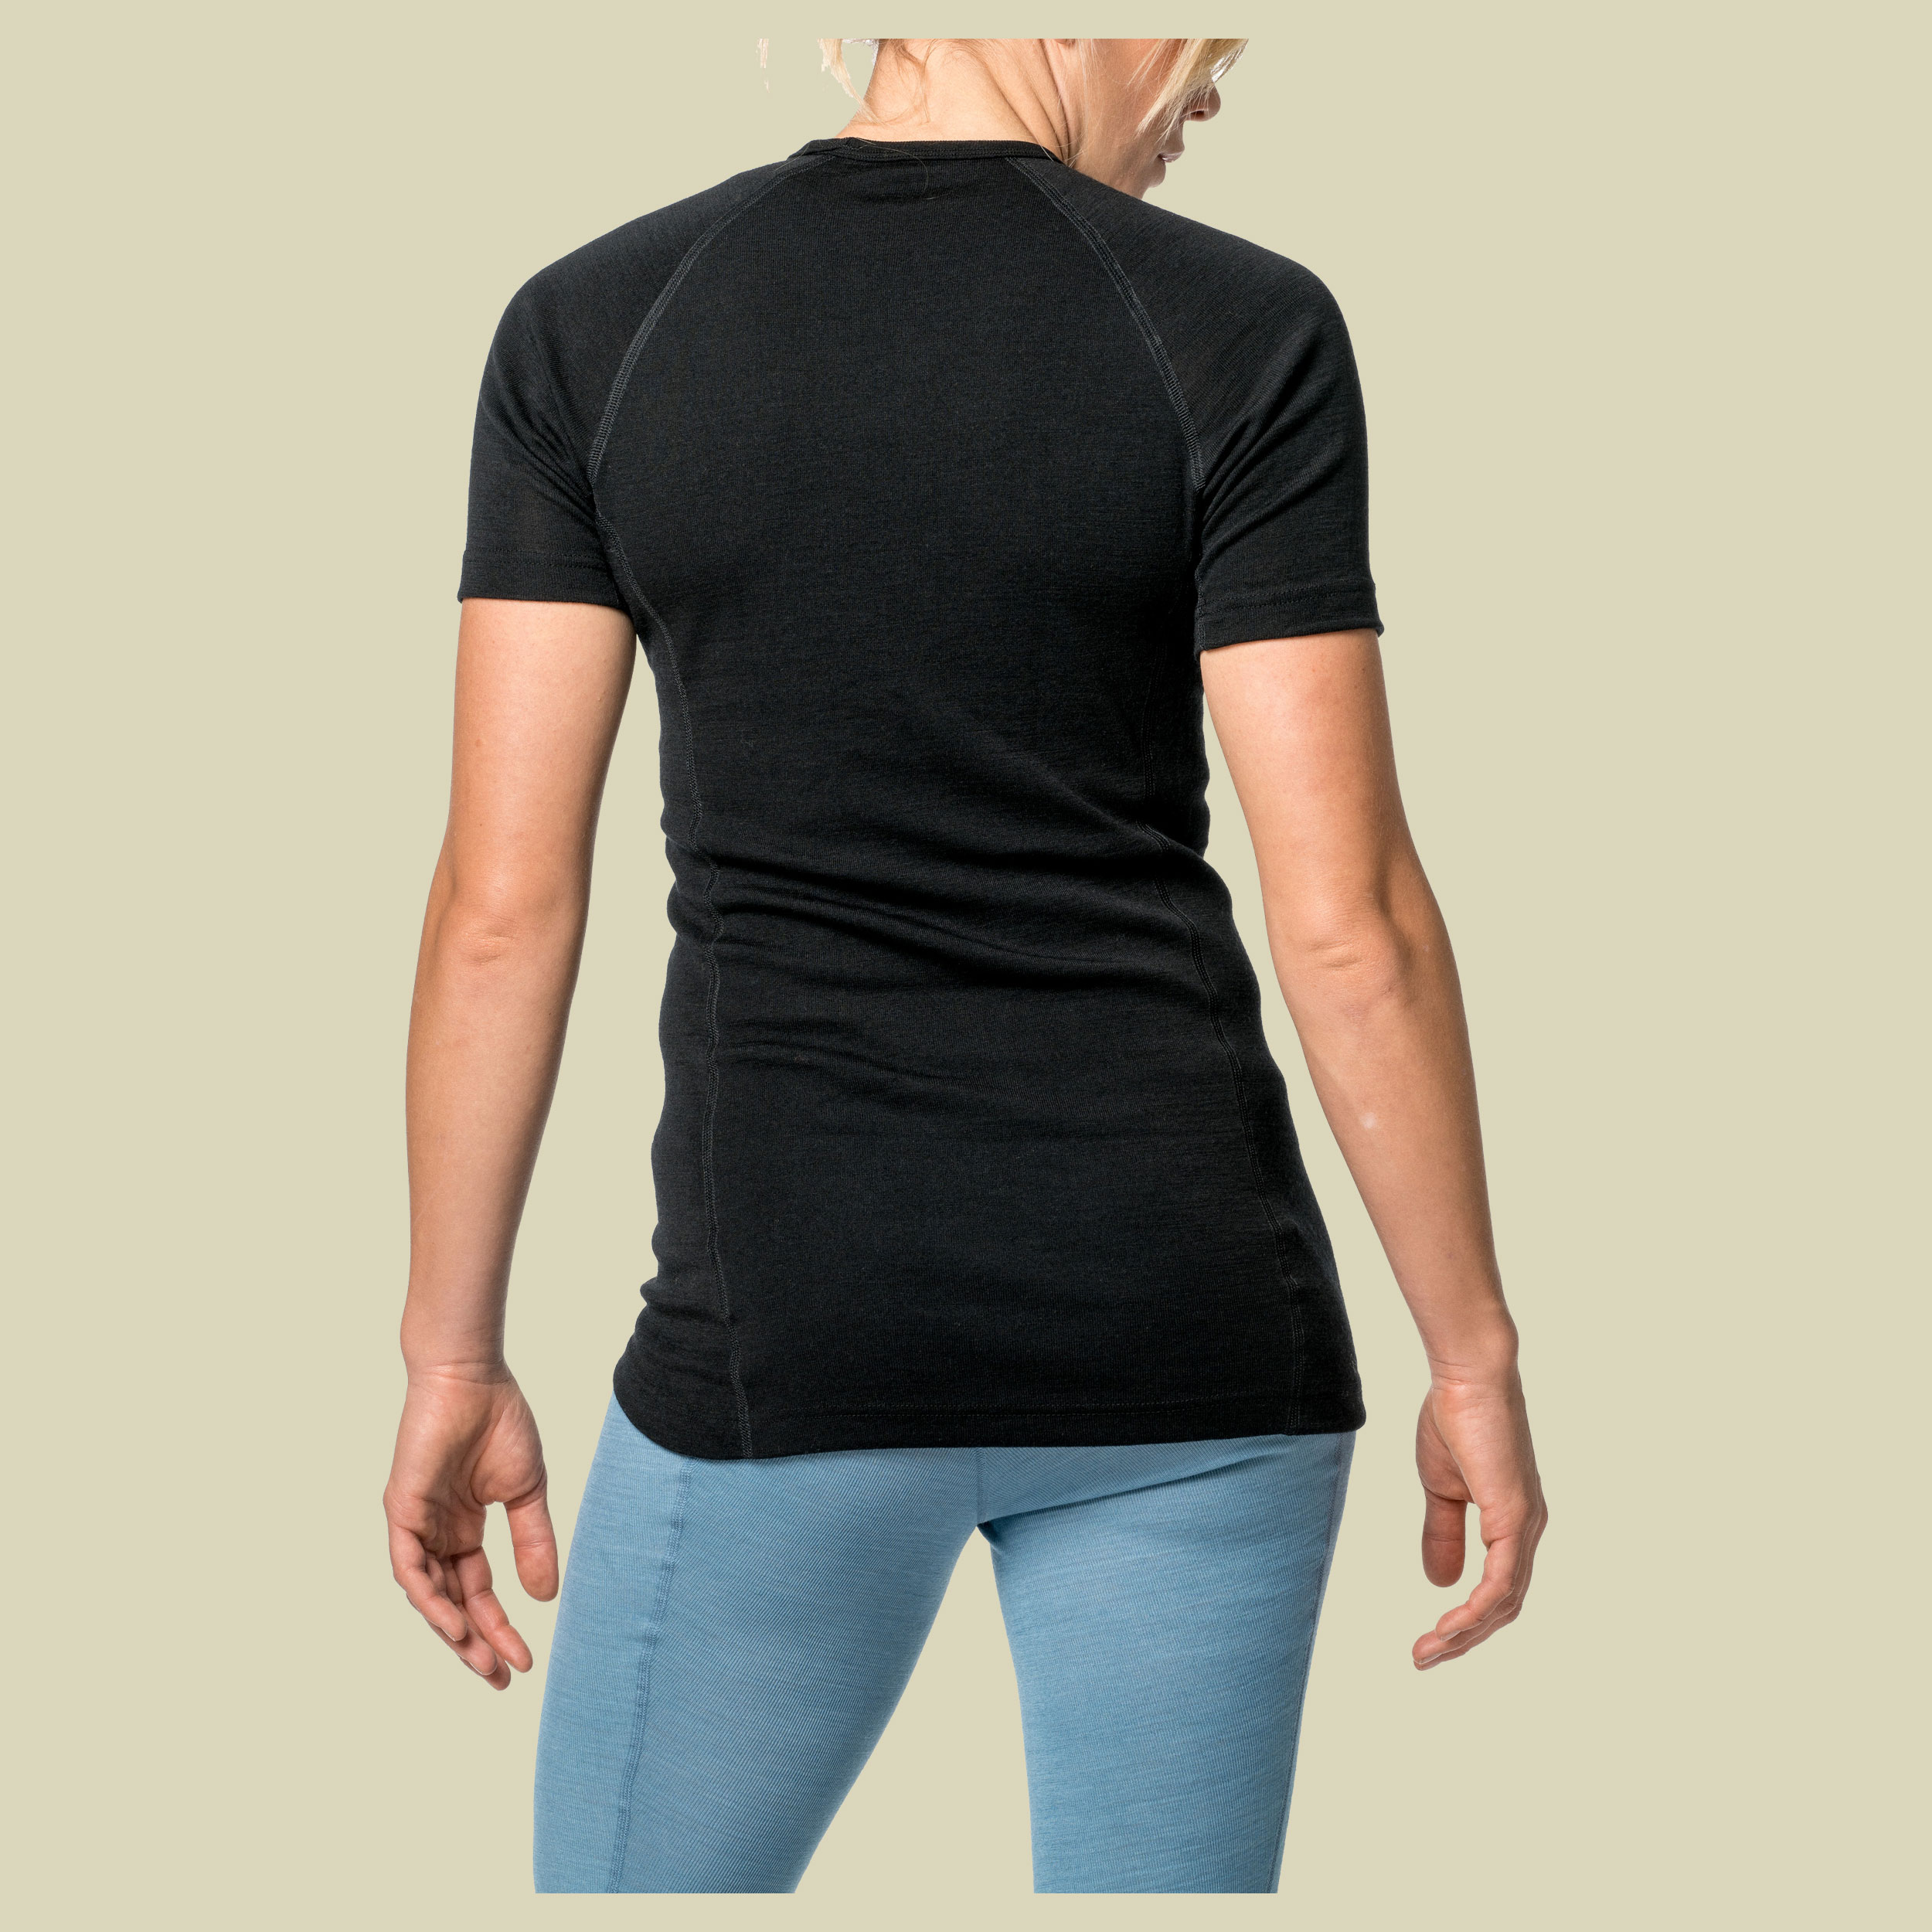 Lite T-Shirt L schwarz - Farbe black